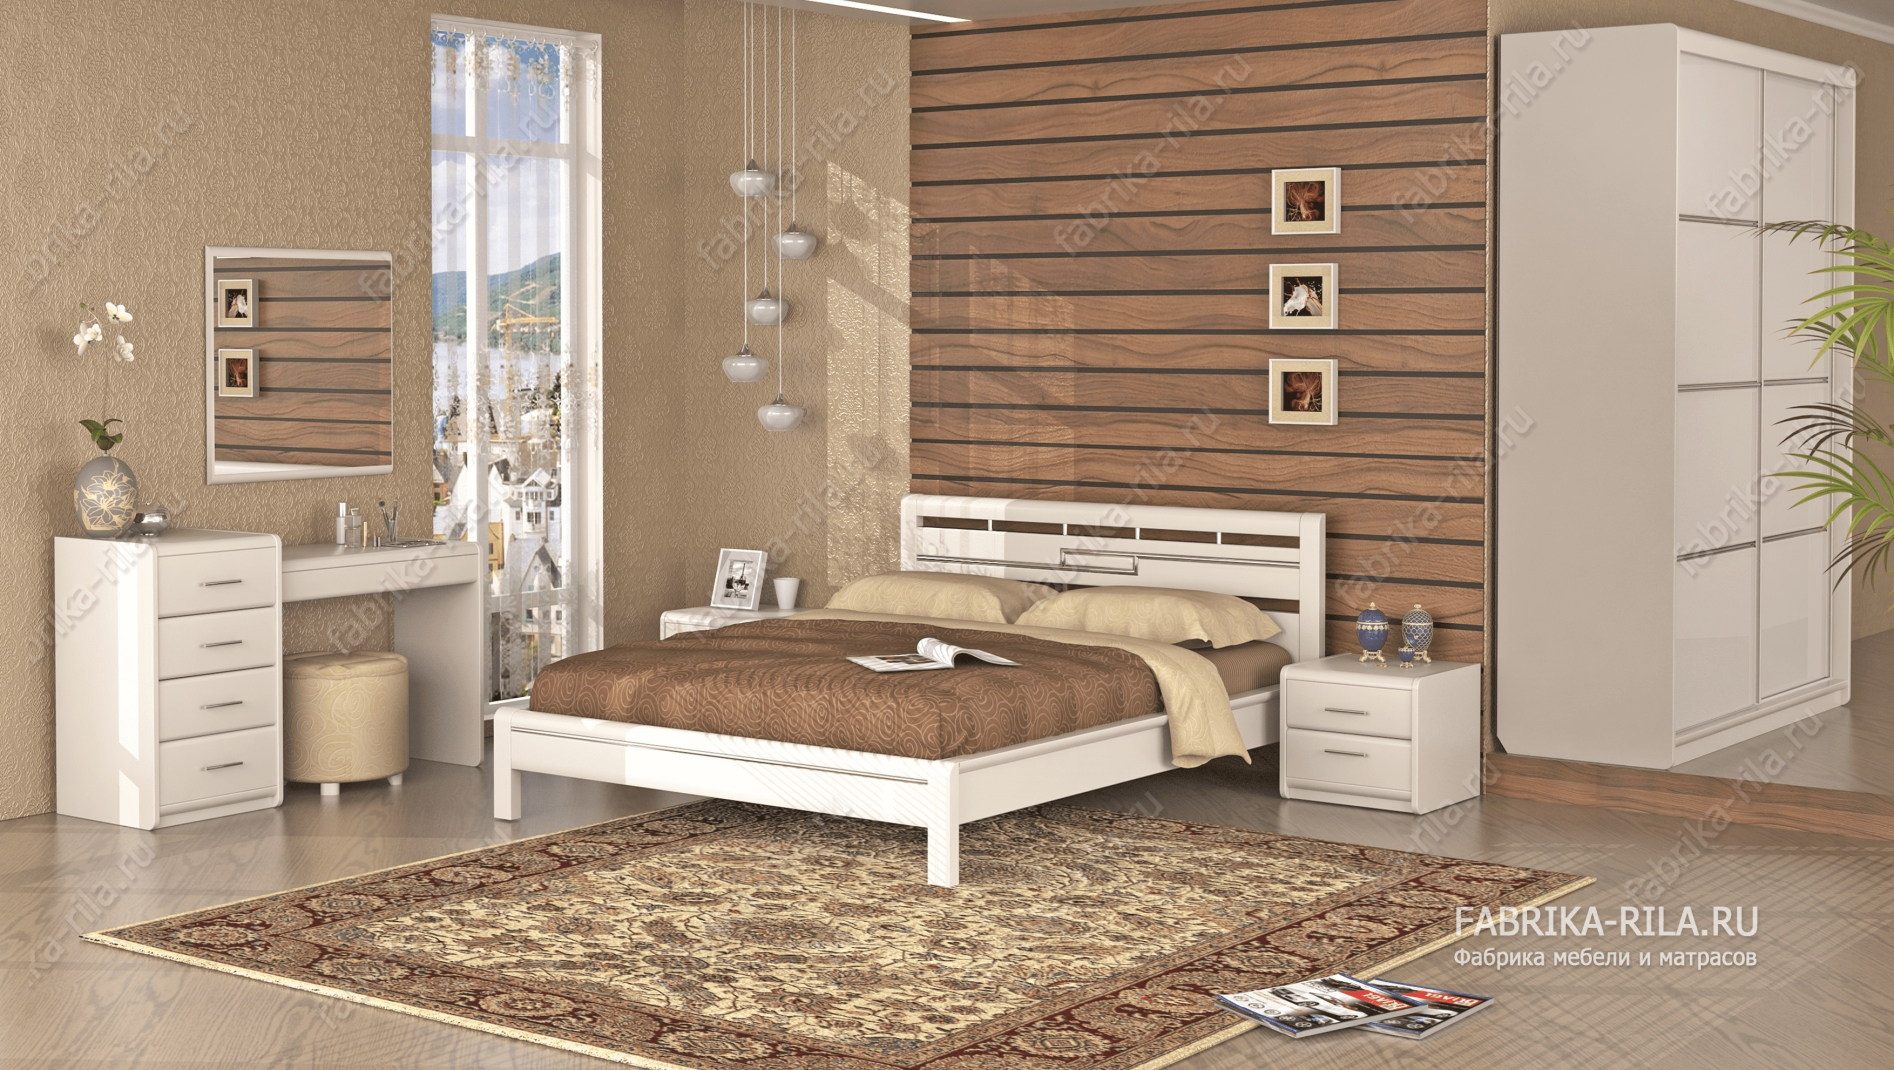 Кровать Okaeri 4 — 200x200 см. из сосны